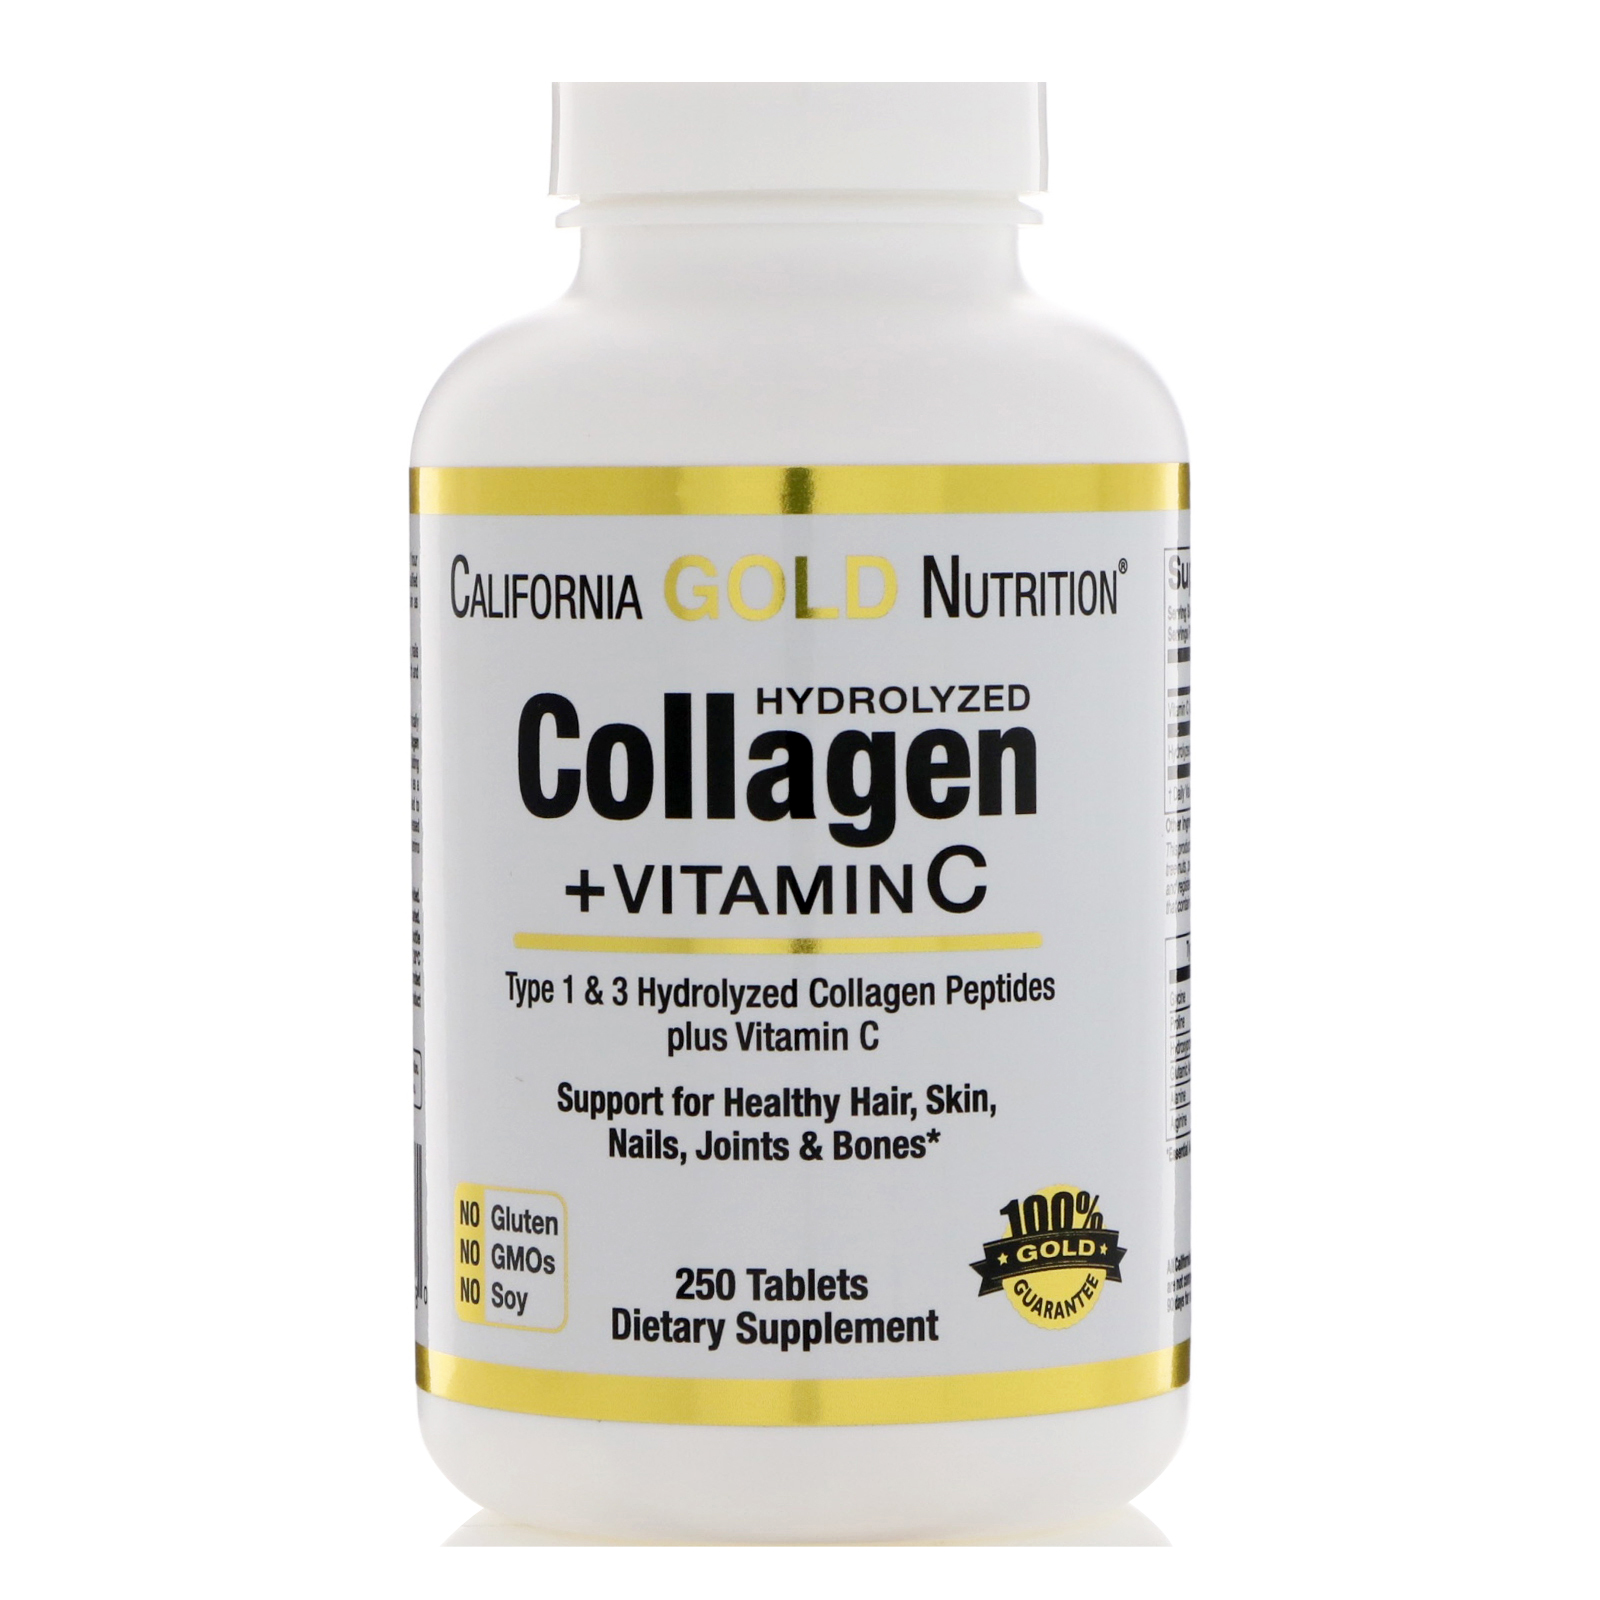 à¸à¸¥à¸à¸²à¸£à¸à¹à¸à¸«à¸²à¸£à¸¹à¸à¸à¸²à¸à¸ªà¸³à¸«à¸£à¸±à¸ california gold nutrition collagen +Vitamin c à¸£à¸²à¸à¸²